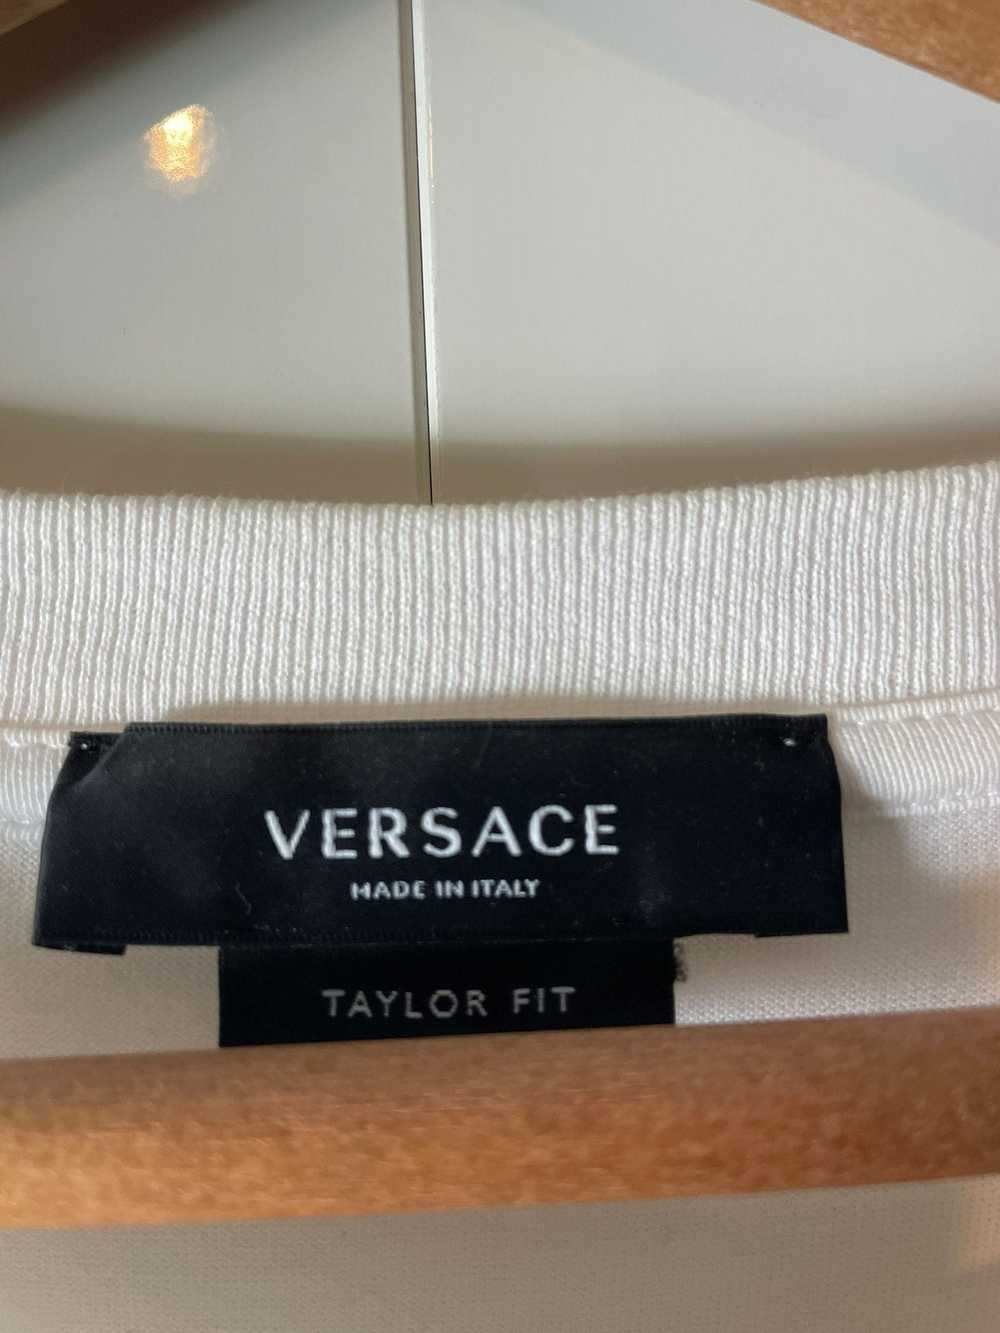 Versace Versace Taylor fit Logo T-shirt size L wh… - image 4